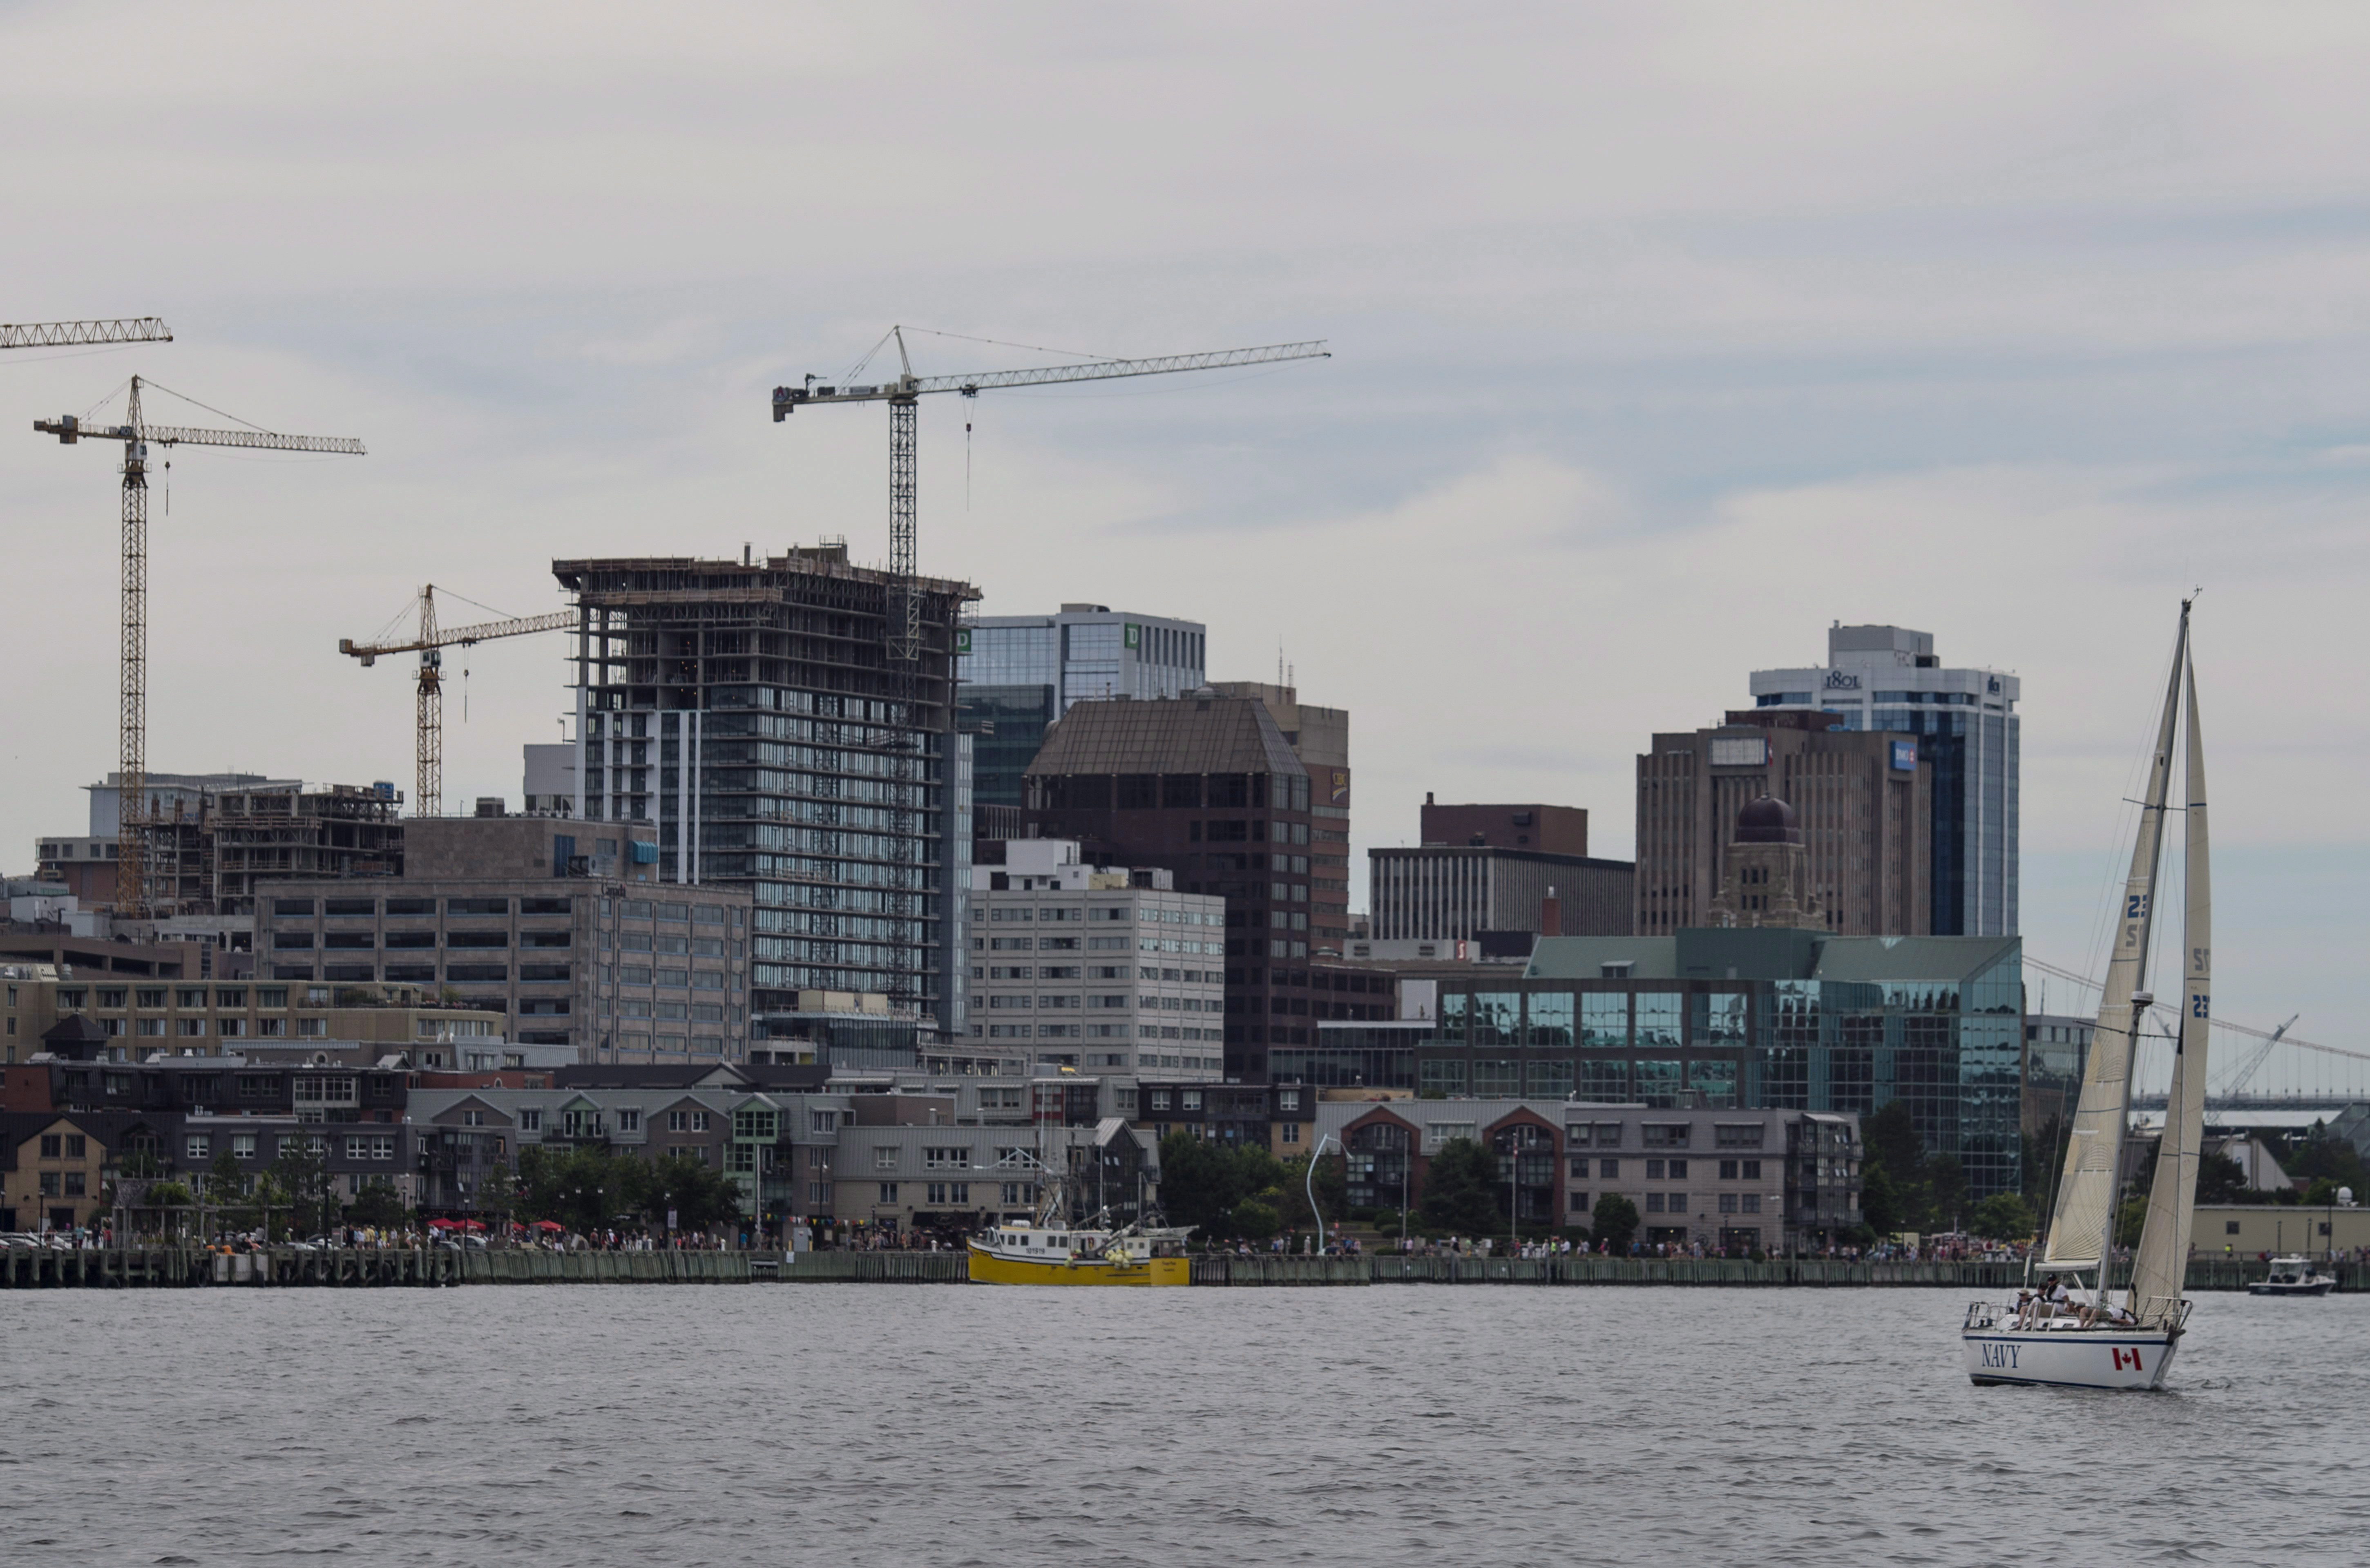  Un voilier est vu devant la ligne d'horizon d'Halifax le dimanche 31 juillet 2016. LA PRESSE CANADIENNE / Darren Calabrese 